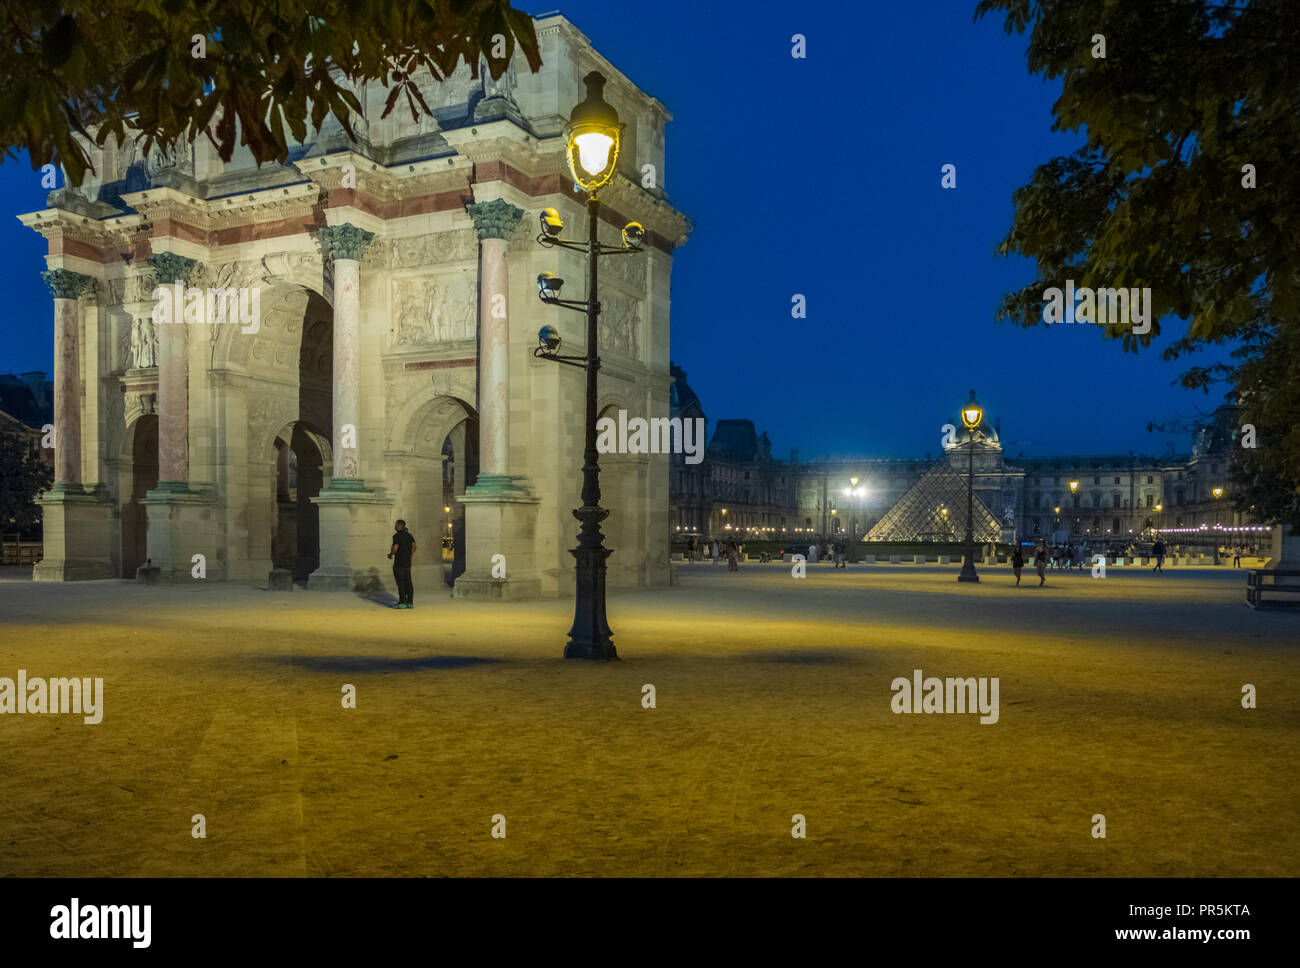 Paris, France - 6 août 2018 : l'Arc de triomphe du Carrousel dans le contexte du musée du Louvre à Paris, France au crépuscule. Banque D'Images